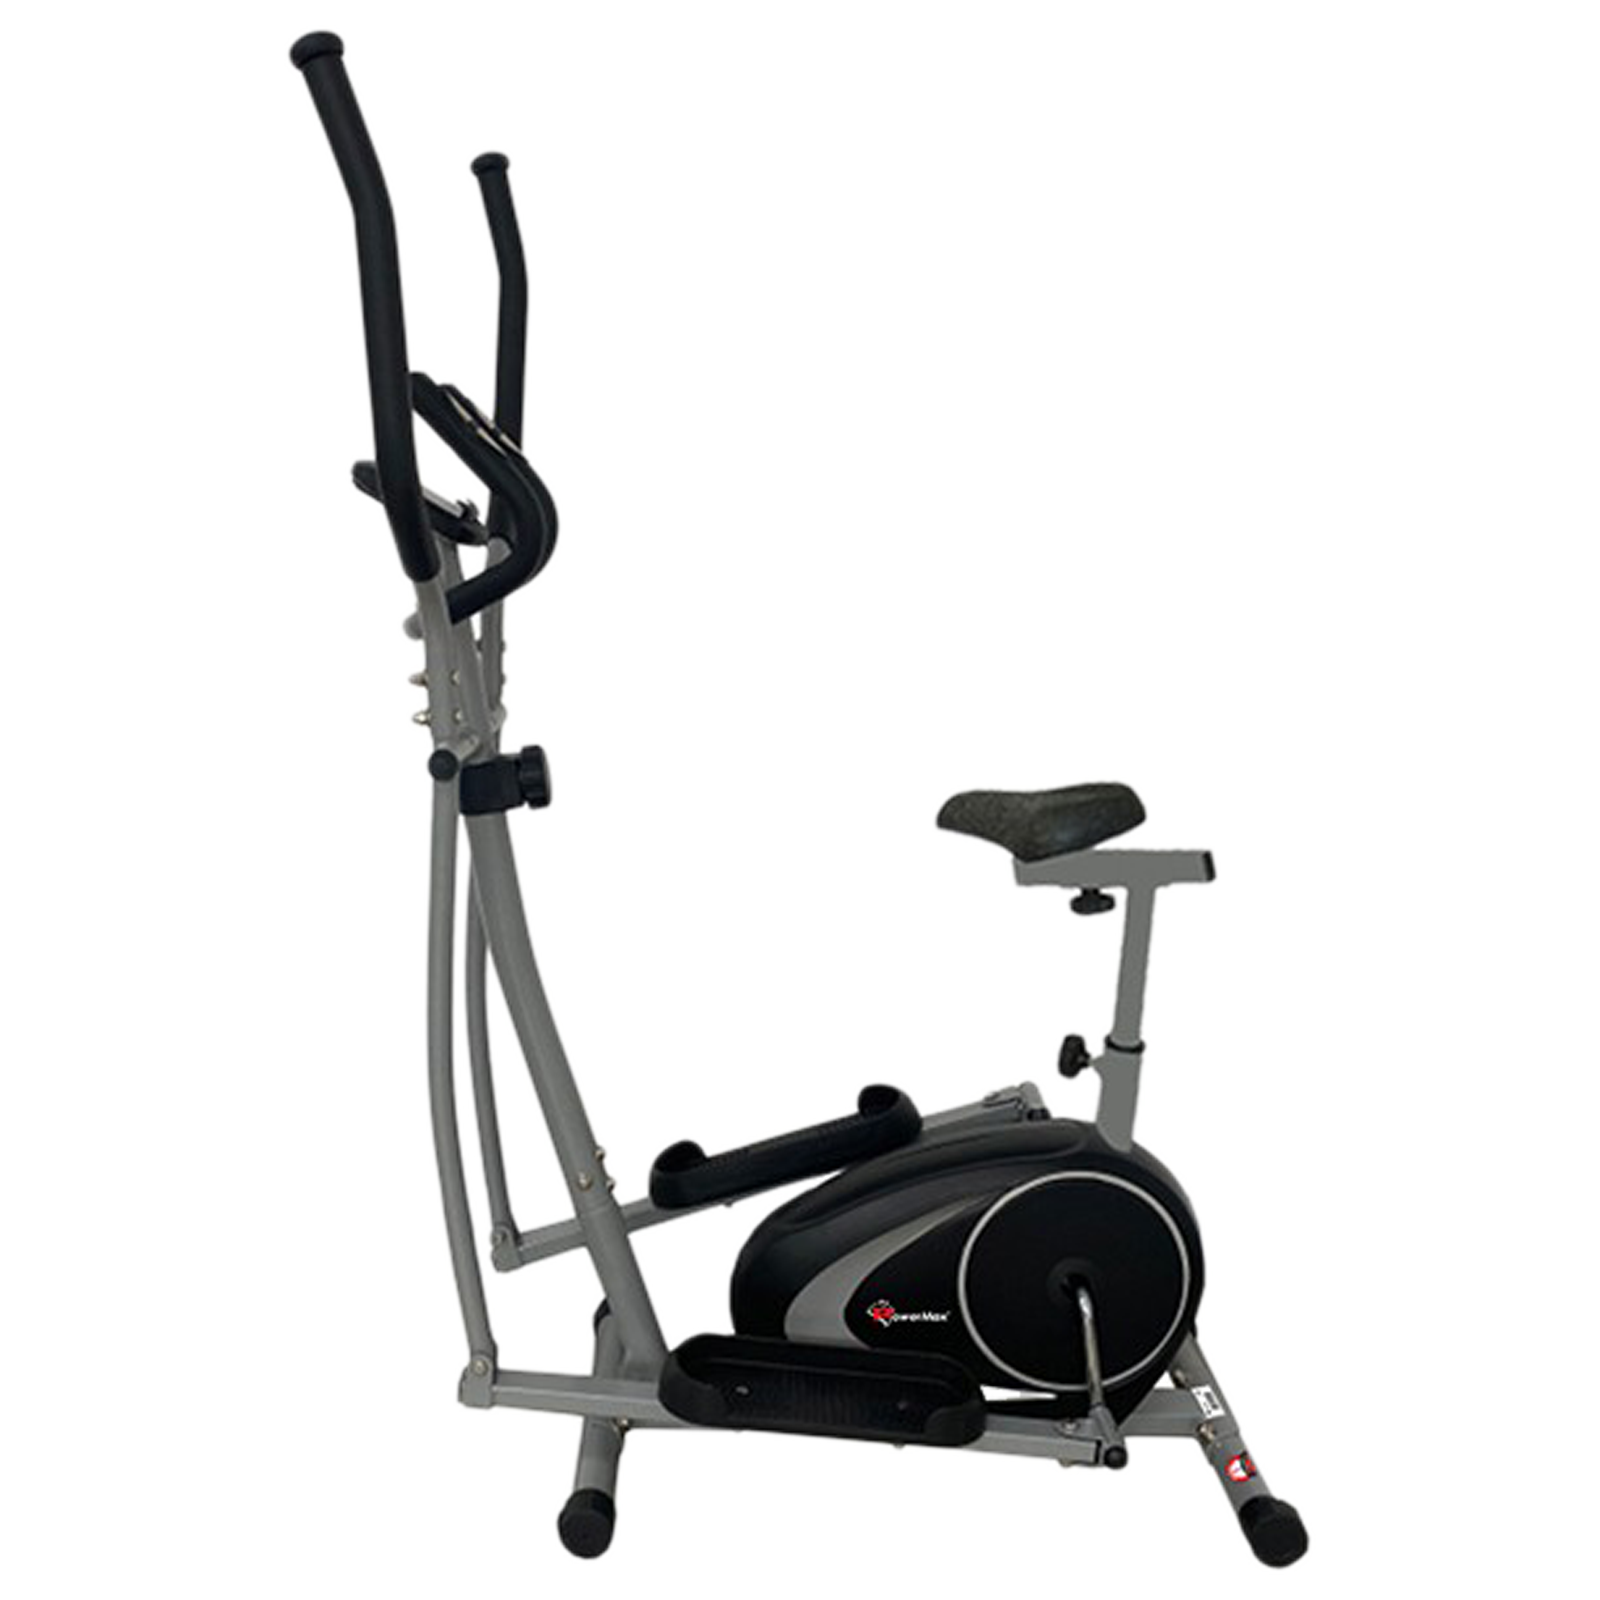 PowerMax Elliptical Cross Trainer Fitness Cycle (5KG Flywheel and 8 Level Resistance, EH-260S, Black)_1